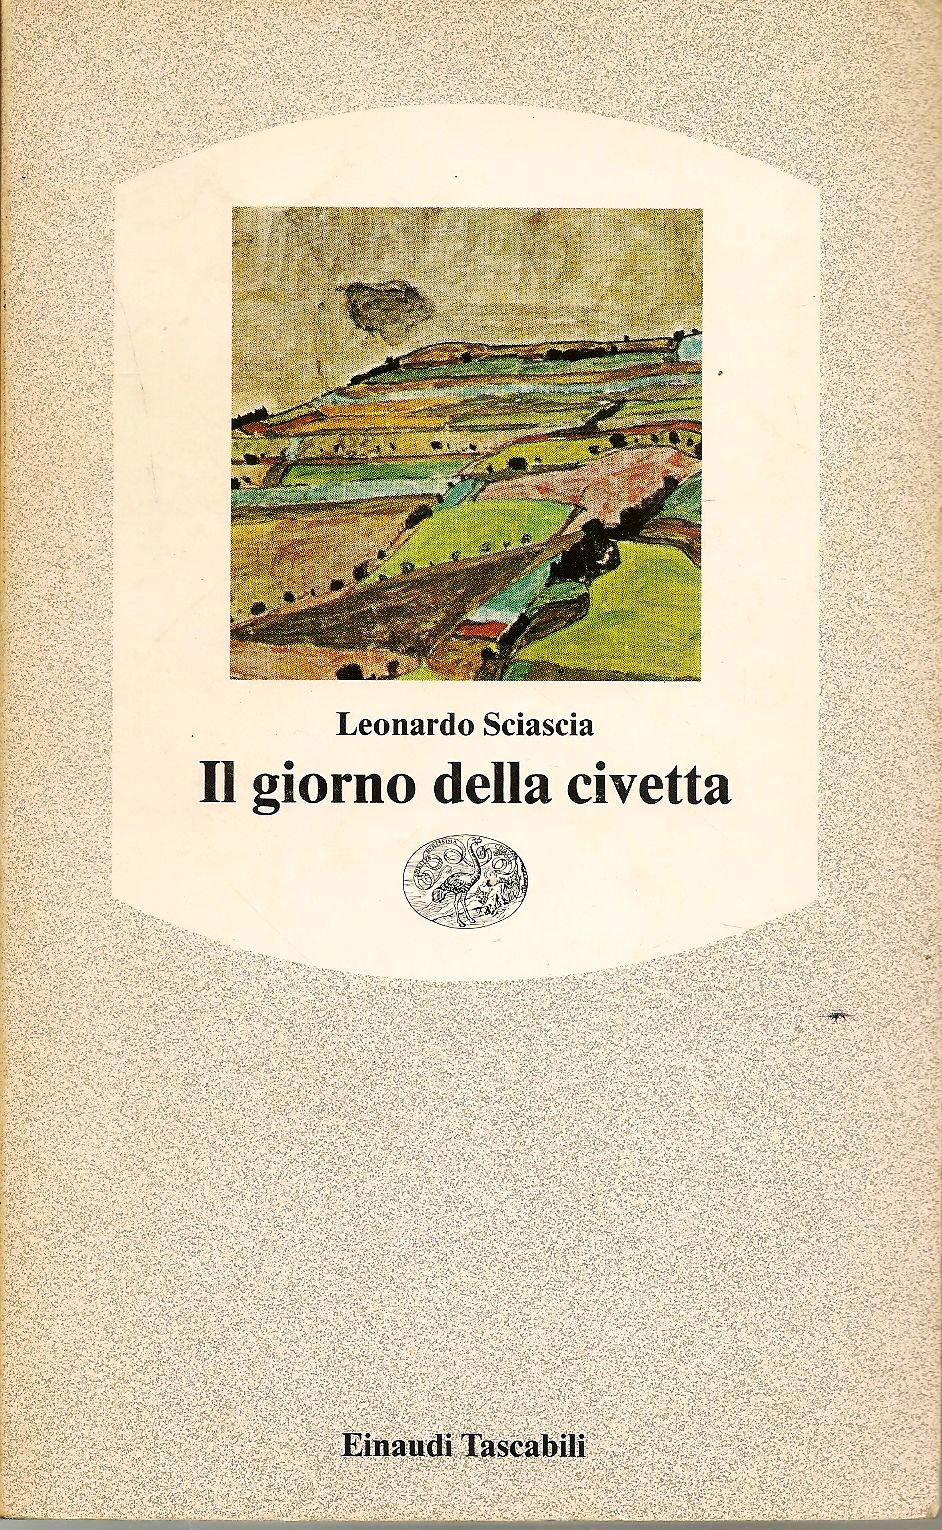 Leonardo Sciascia: IL GIORNO DELLA CIVETTA. – Biblioteca Liceo Gullace  Talotta